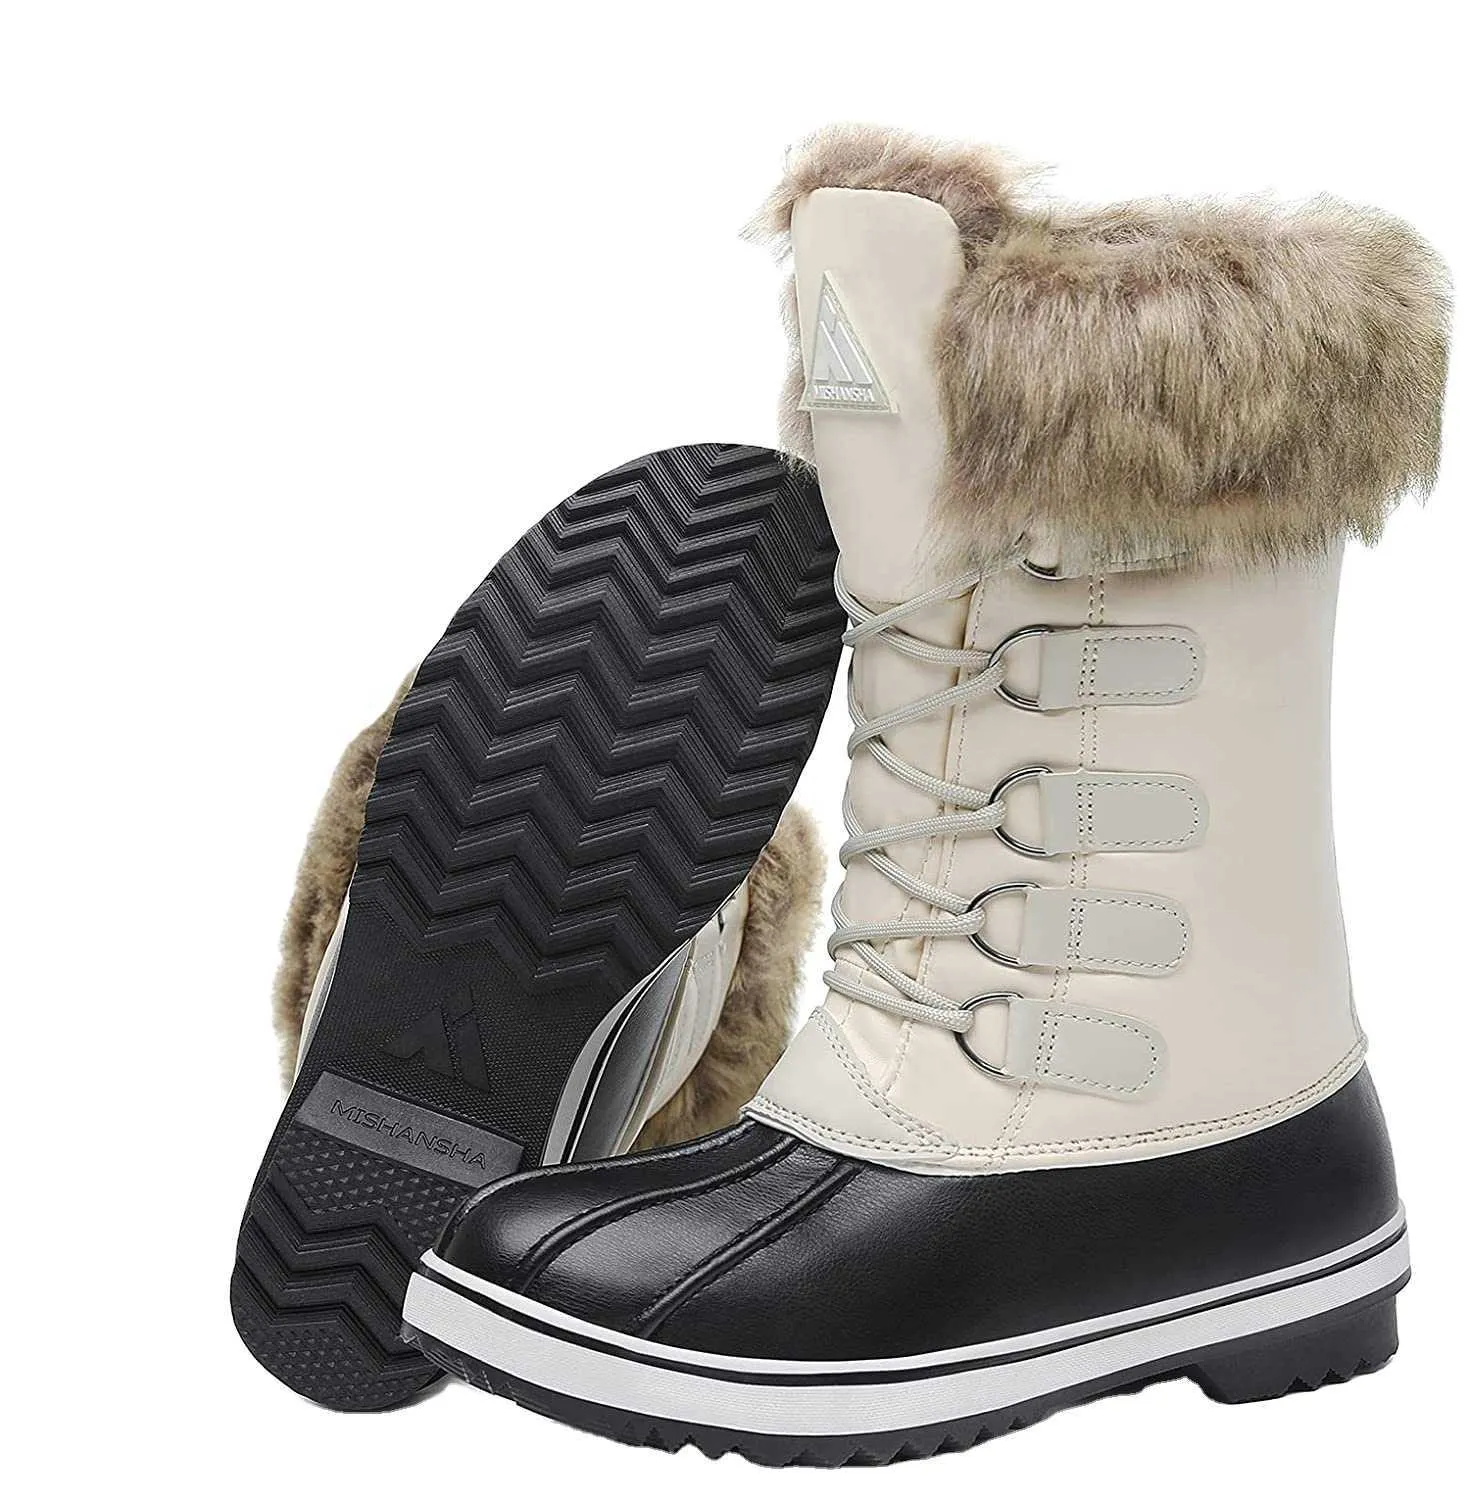 HBP Chaussures montantes chaudes sans marque pour femmes Bottes de neige Chaussures Stock avec semelle extérieure TPR antidérapante